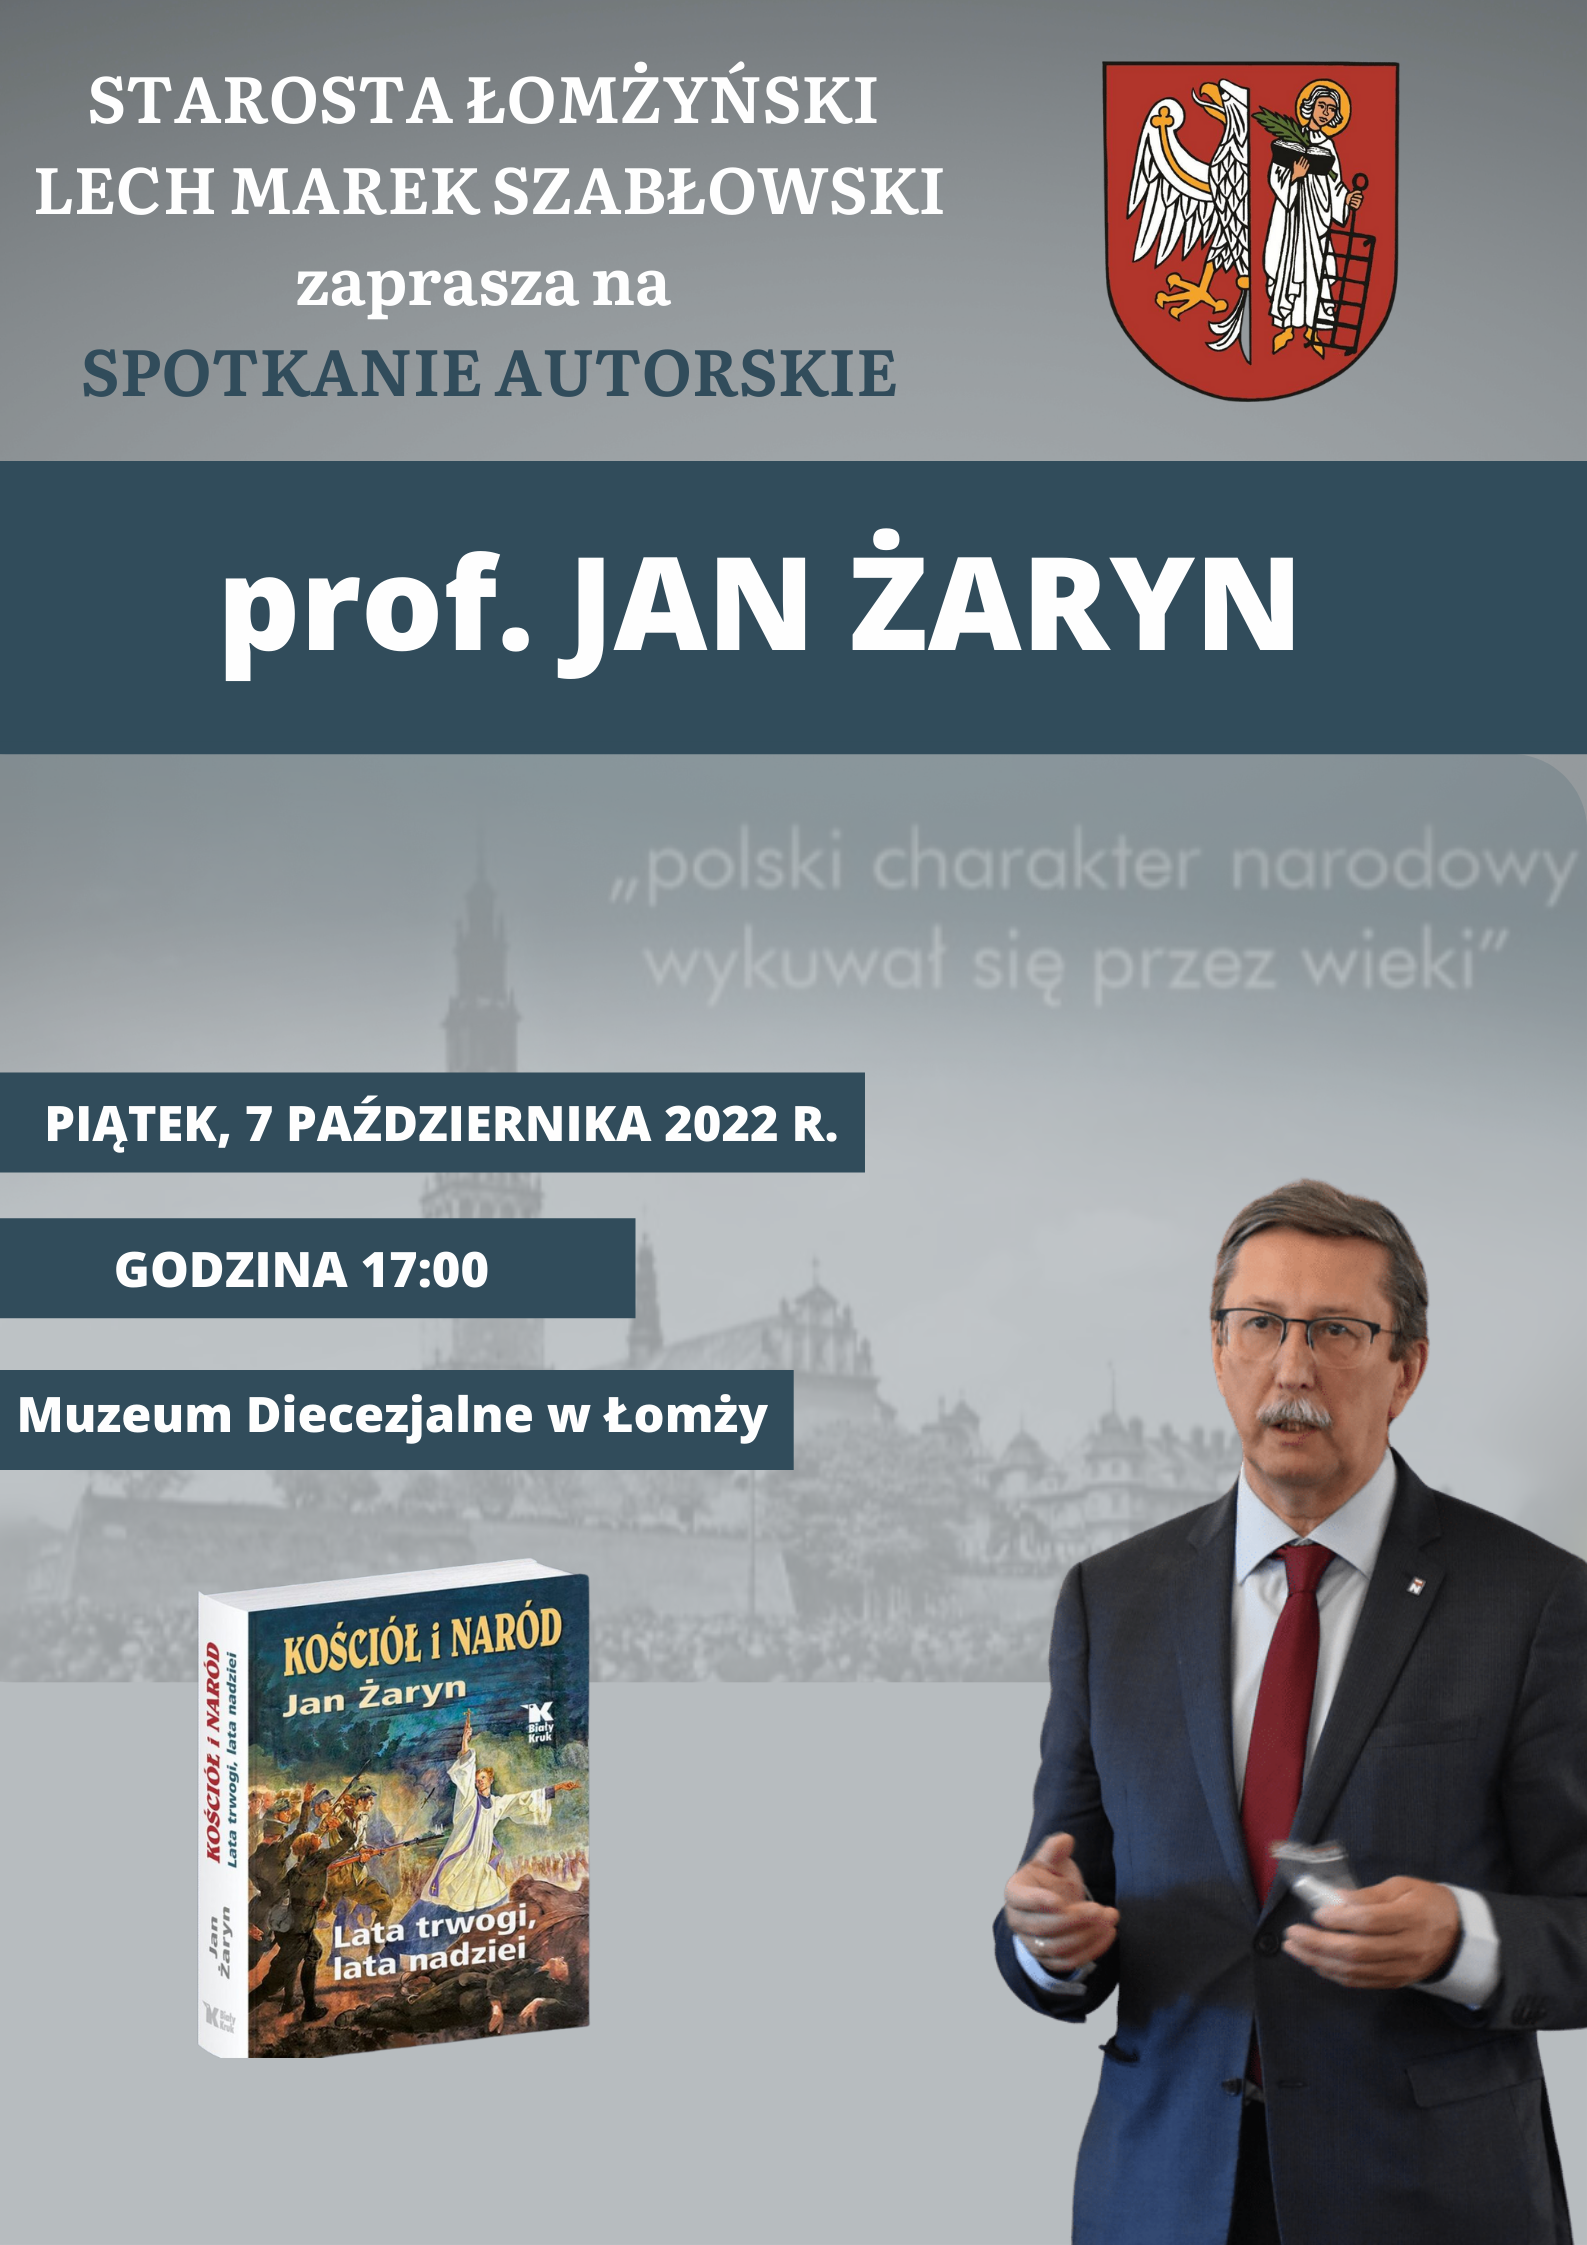 Foto: Spotkanie autorskie prof. Jan Żaryn